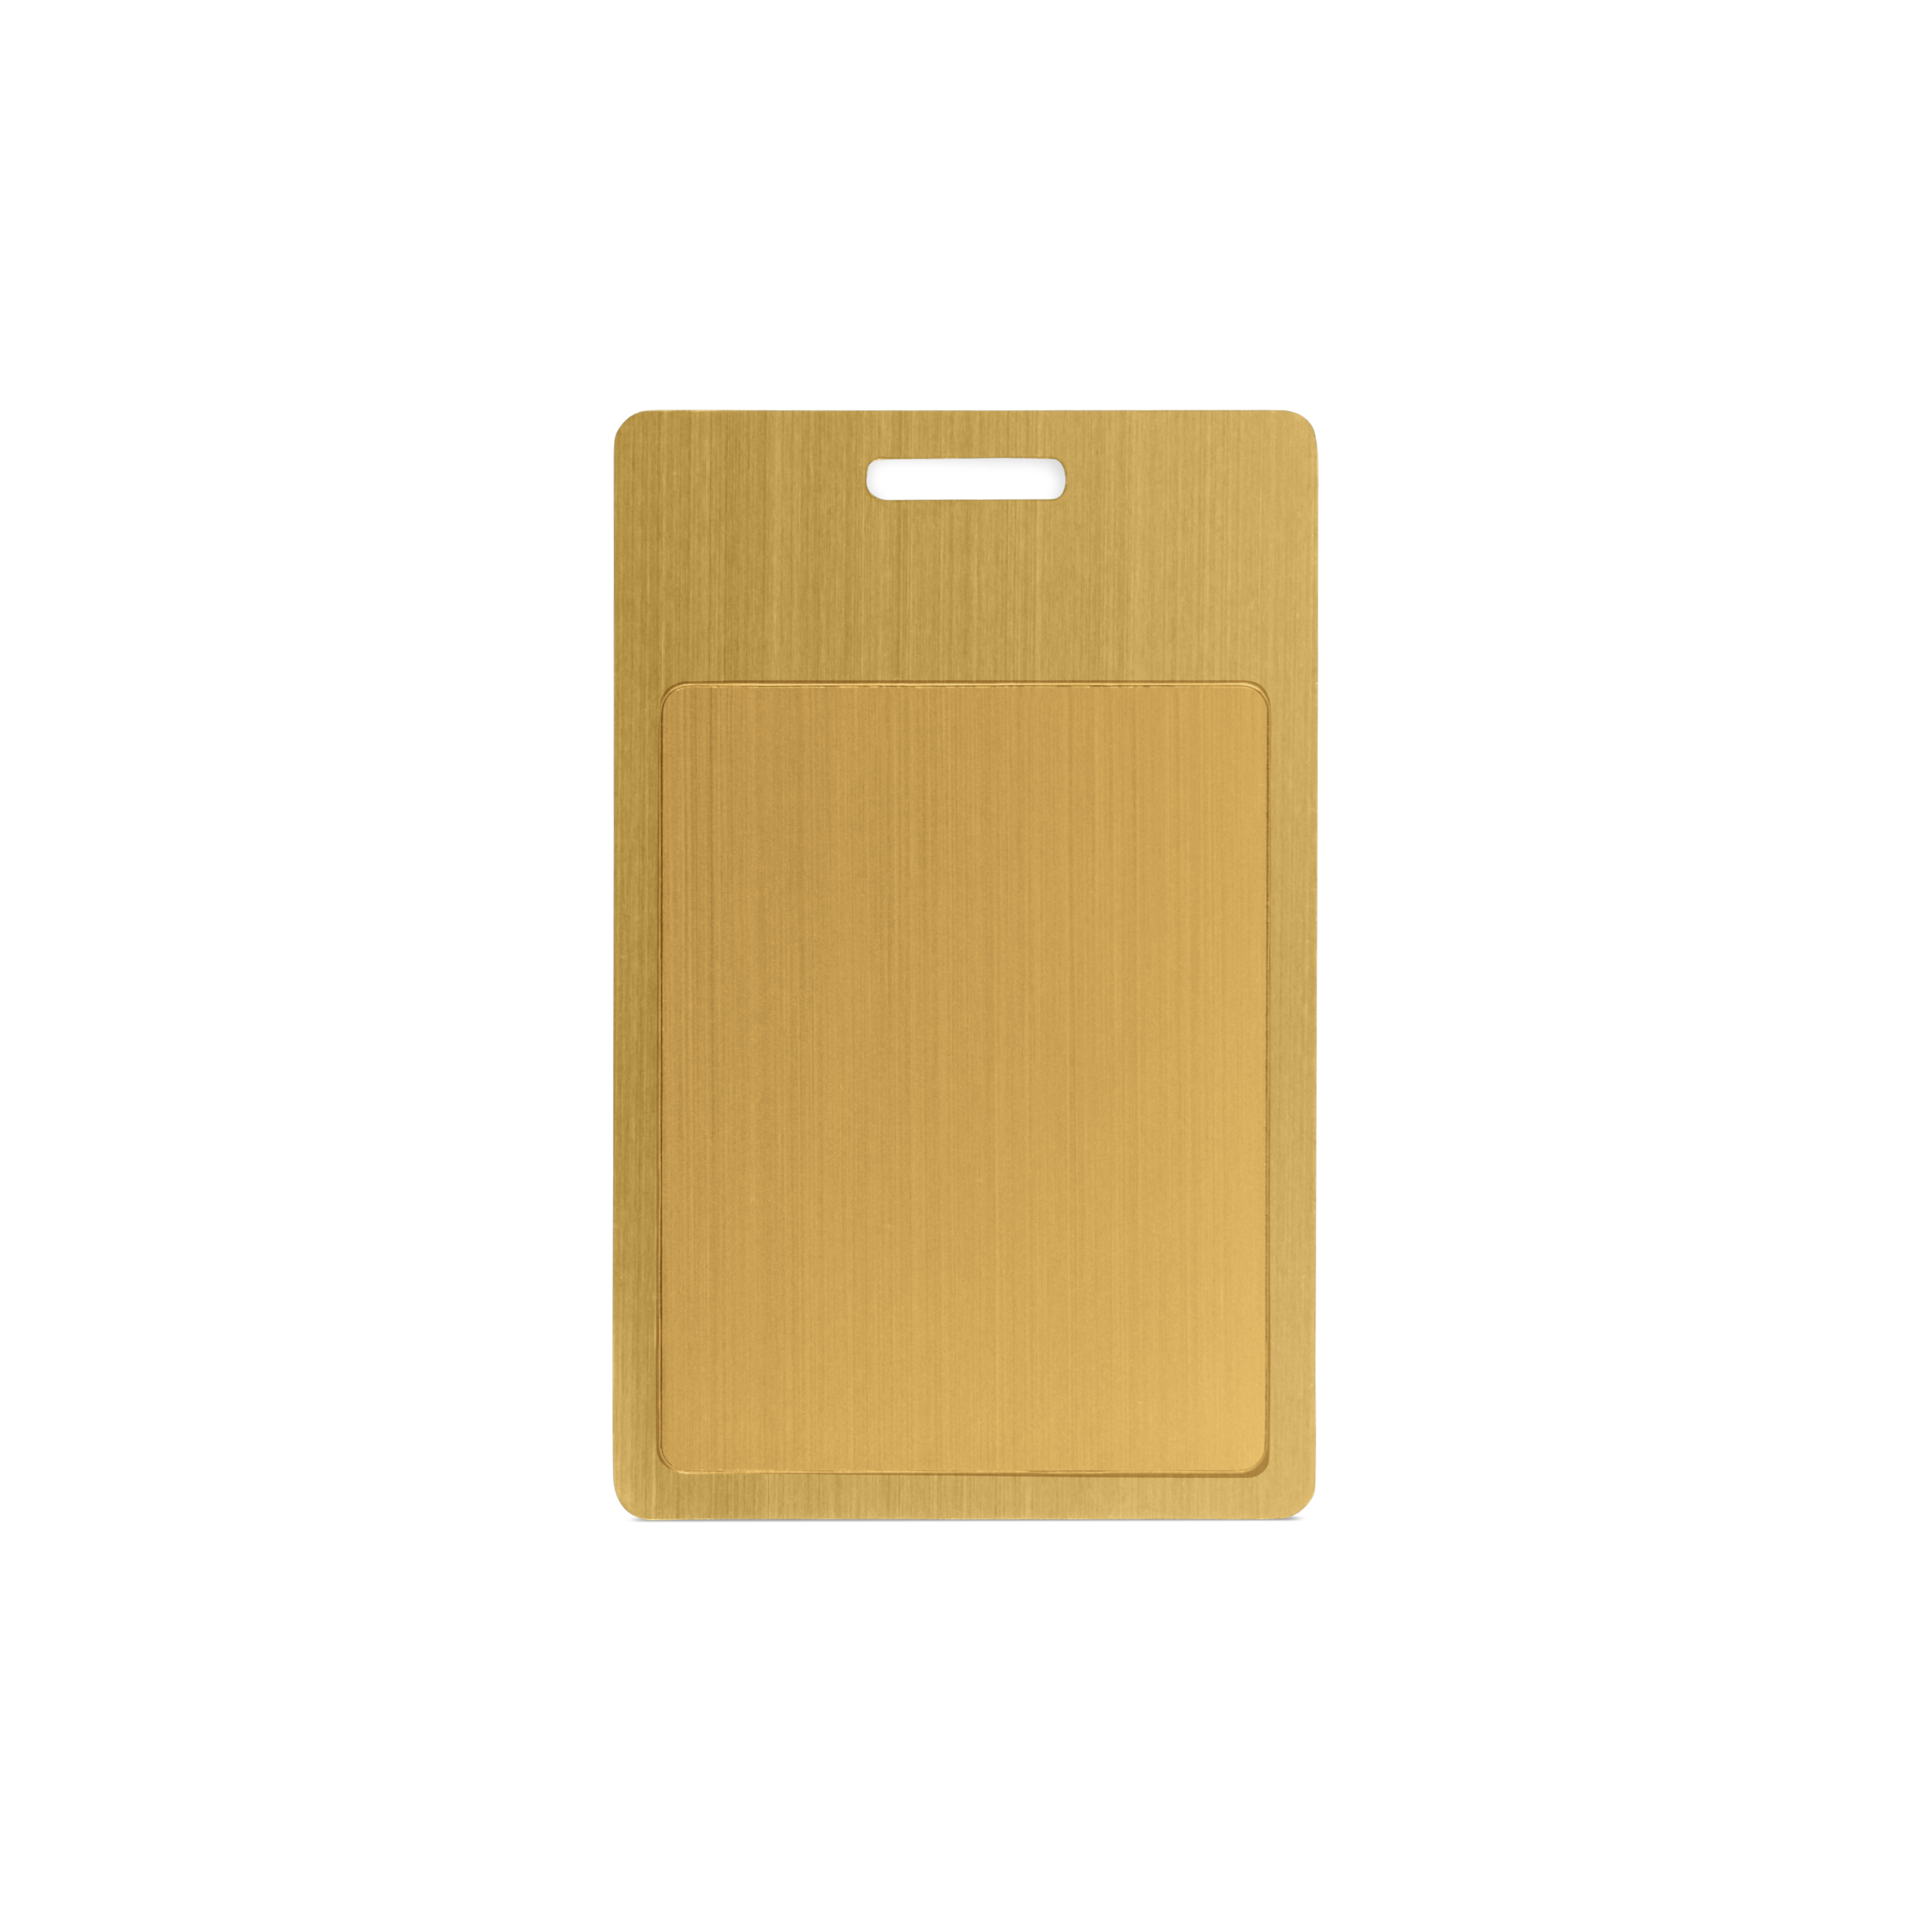 NFC Karte Metall - 85,6 x 54 mm - NTAG213 - 180 Byte - gold - Hochformat mit Schlitz